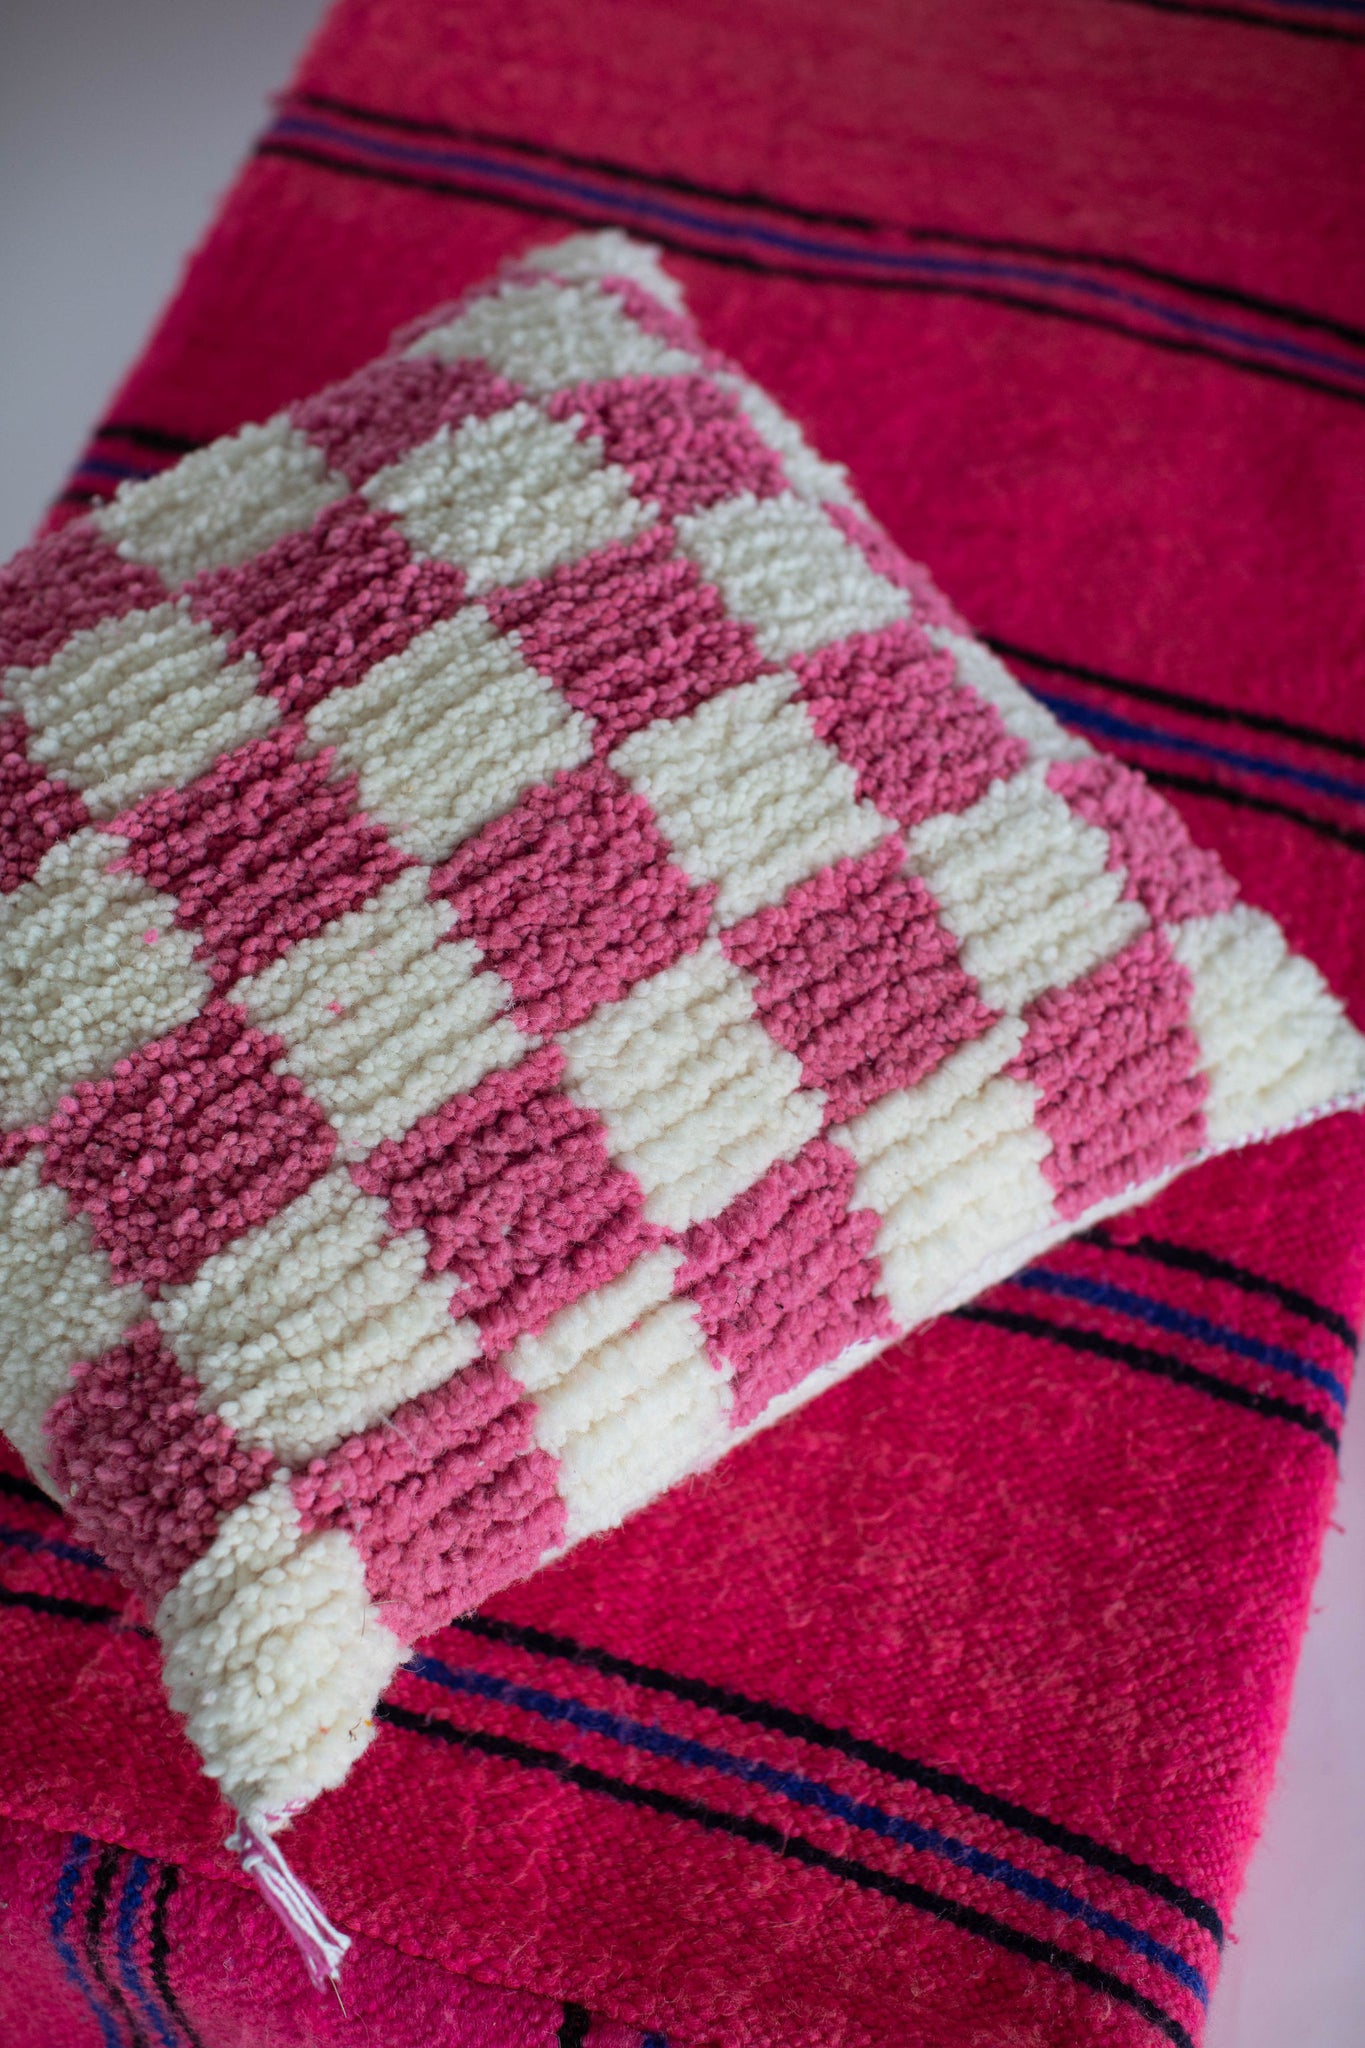 Handmade Moroccan Checkered Pillows